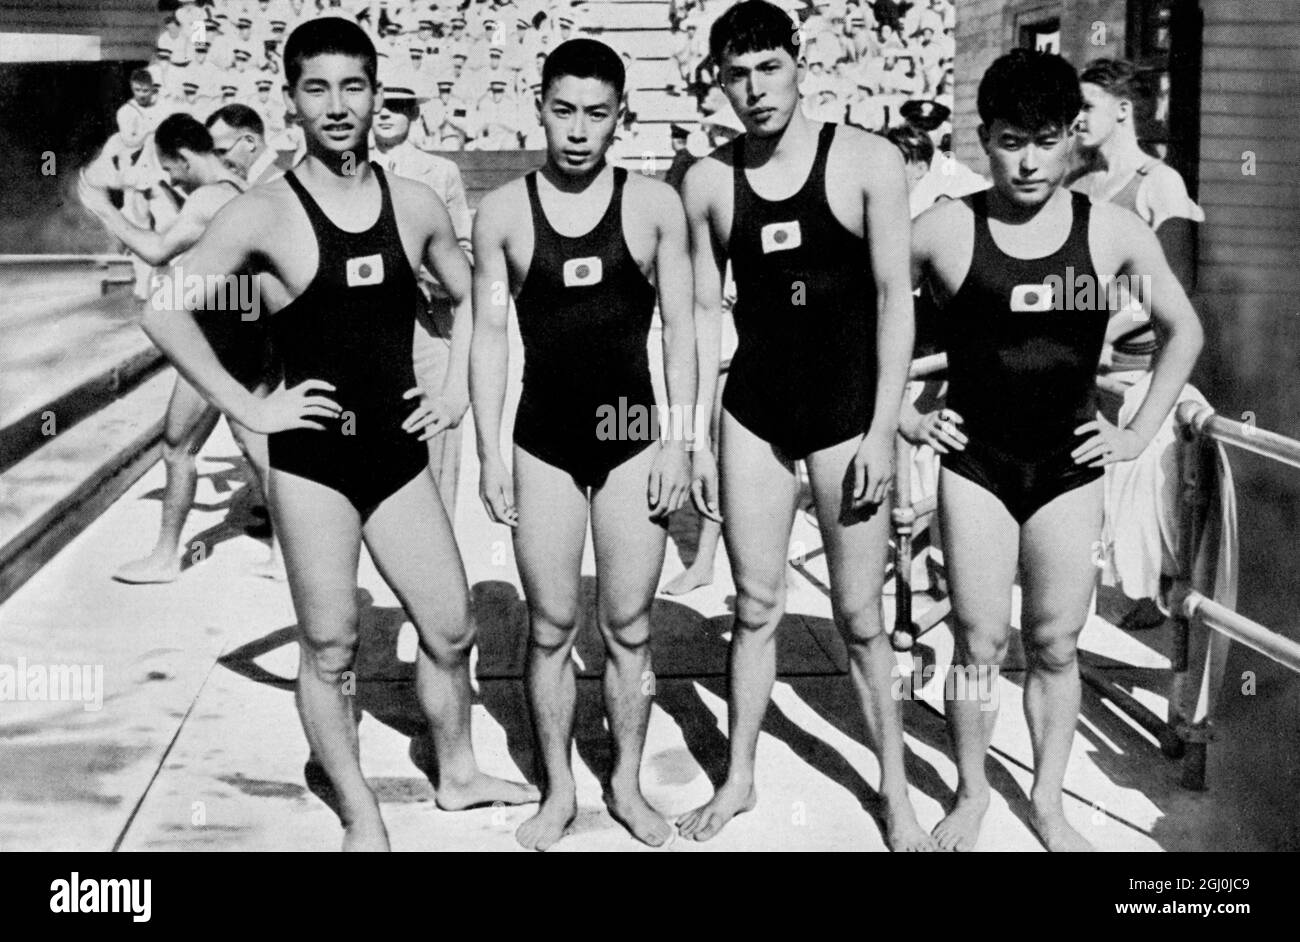 El relé Erdreil 4 x 200m competición olímpica, en Berlín 1936. Esta imagen muestra el destacado equipo de relevos japonés (l-r) Miyazaki, Yusa, Toyoda, Yokojama. Este equipo se considera generalmente como imbatible. ©Topfoto Foto de stock